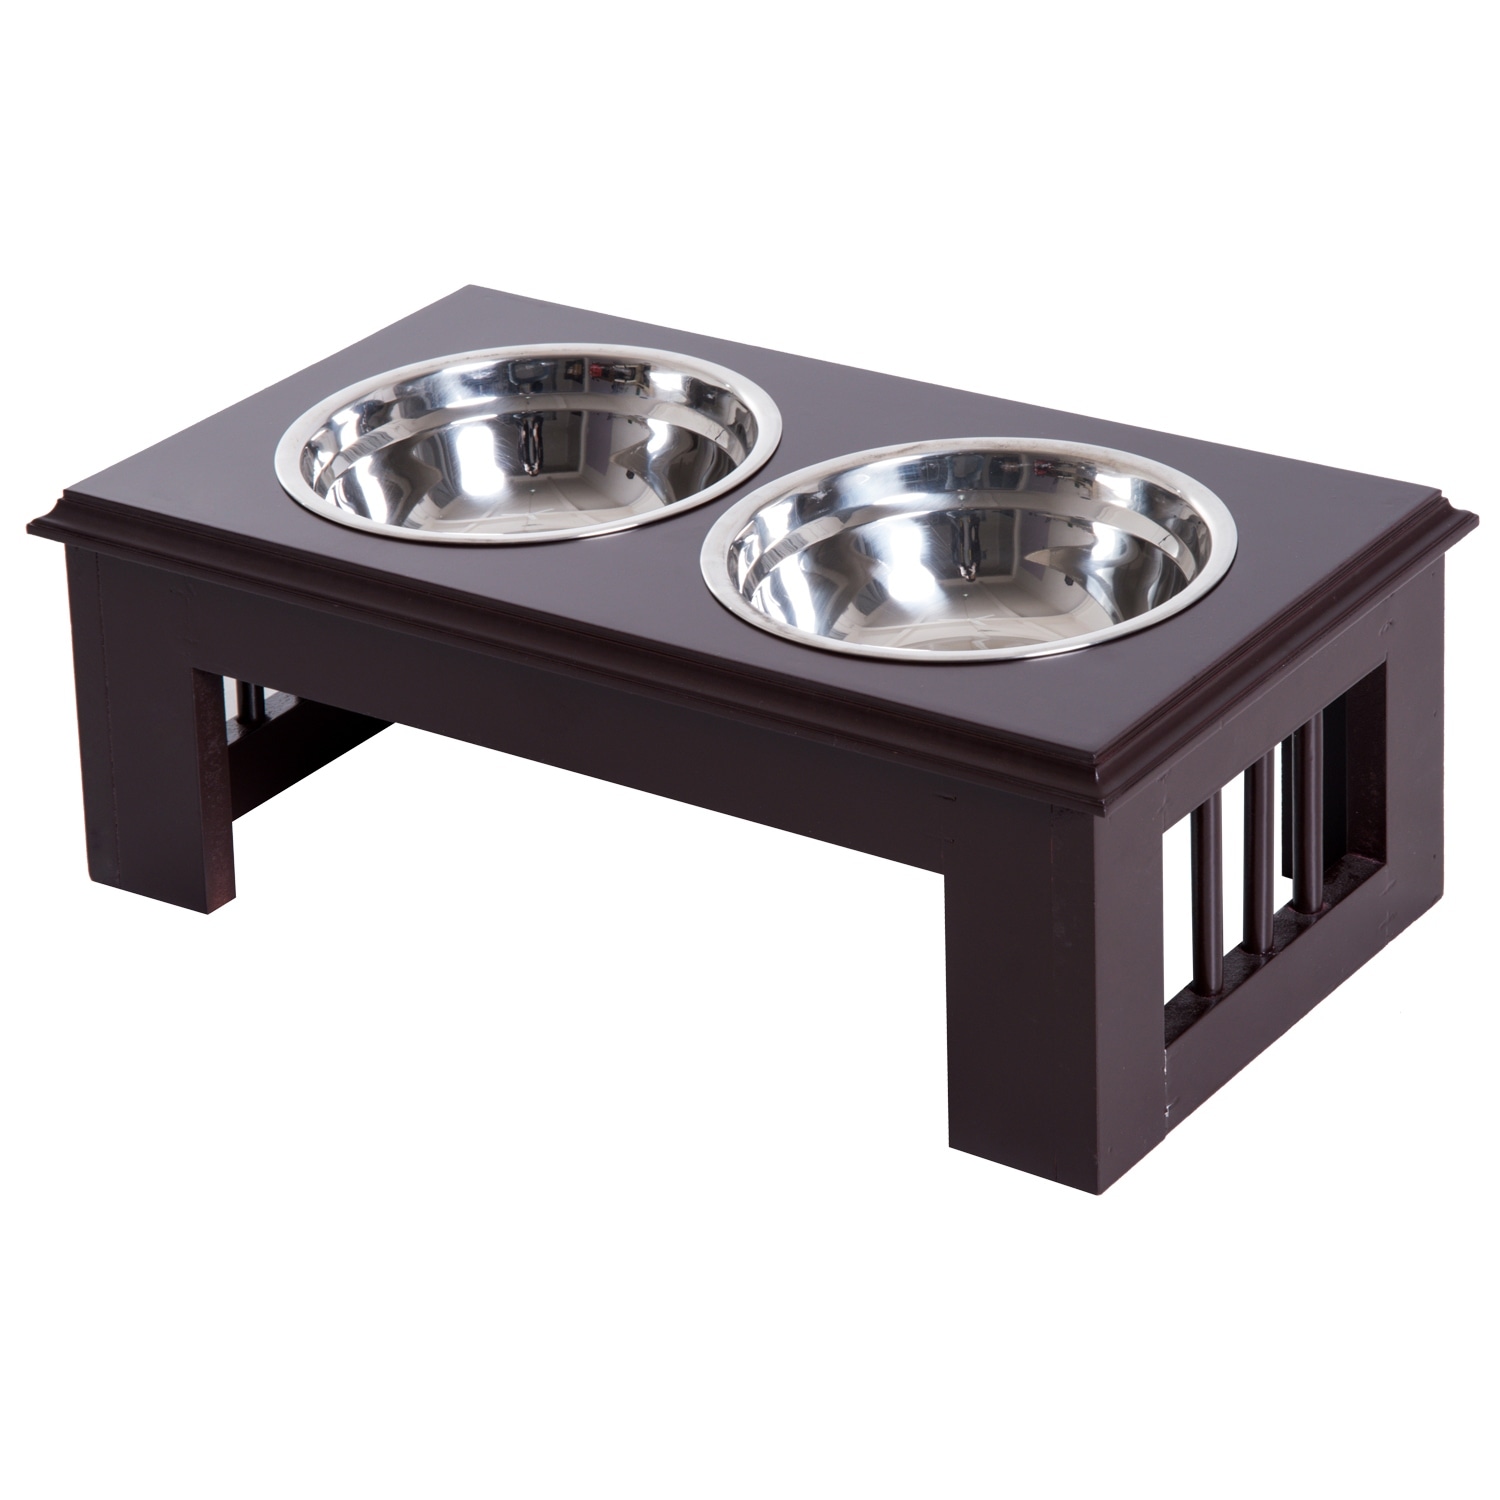 PawHut 23 Modern Dog Bone Wooden Heavy Duty Pet Food Bowl Elevated Feeding Station - Black